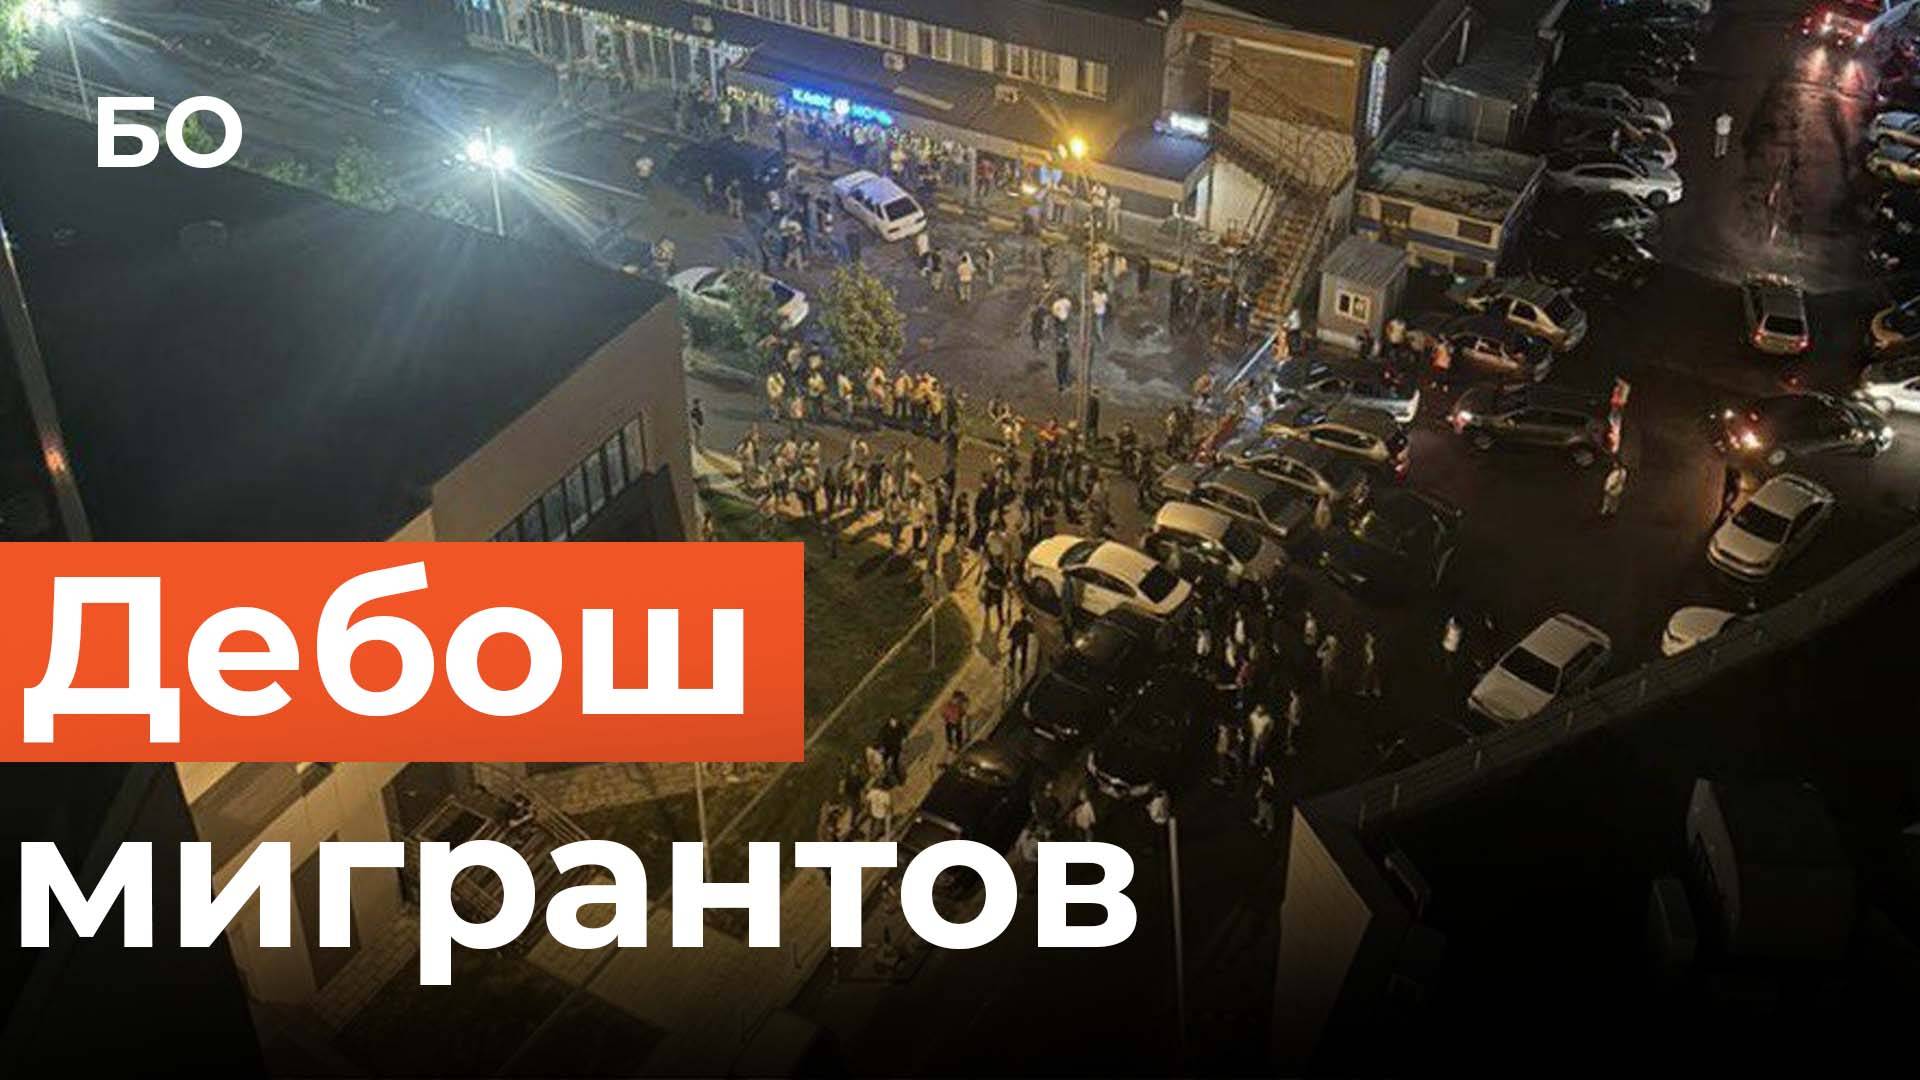 Десятки мигрантов устроили массовую драку в Казани